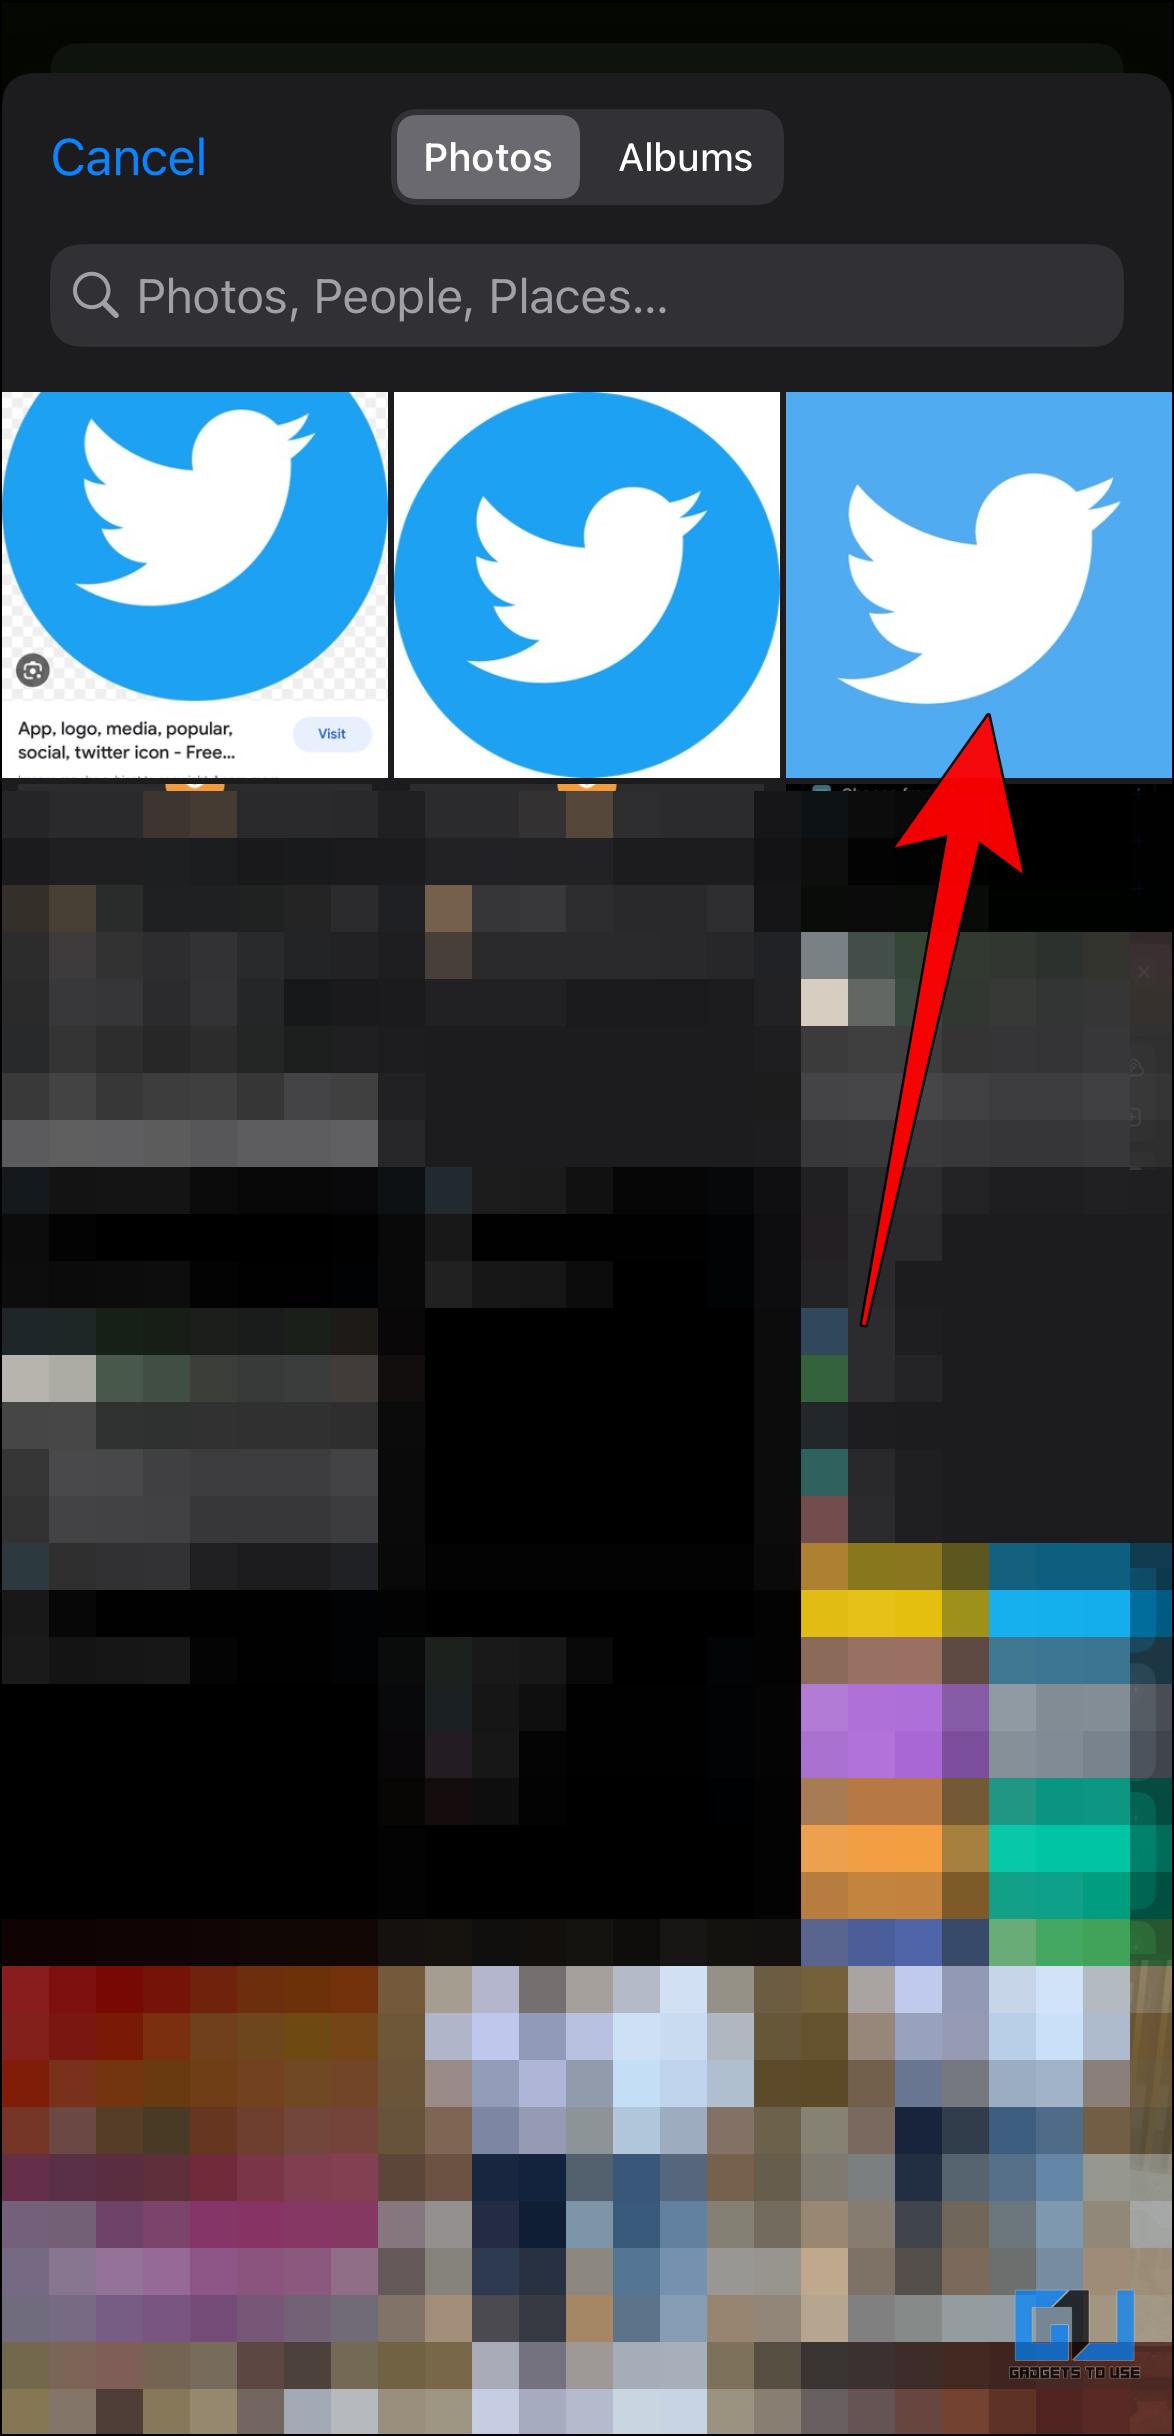 revert or change back Twitter X logo to Bluebird